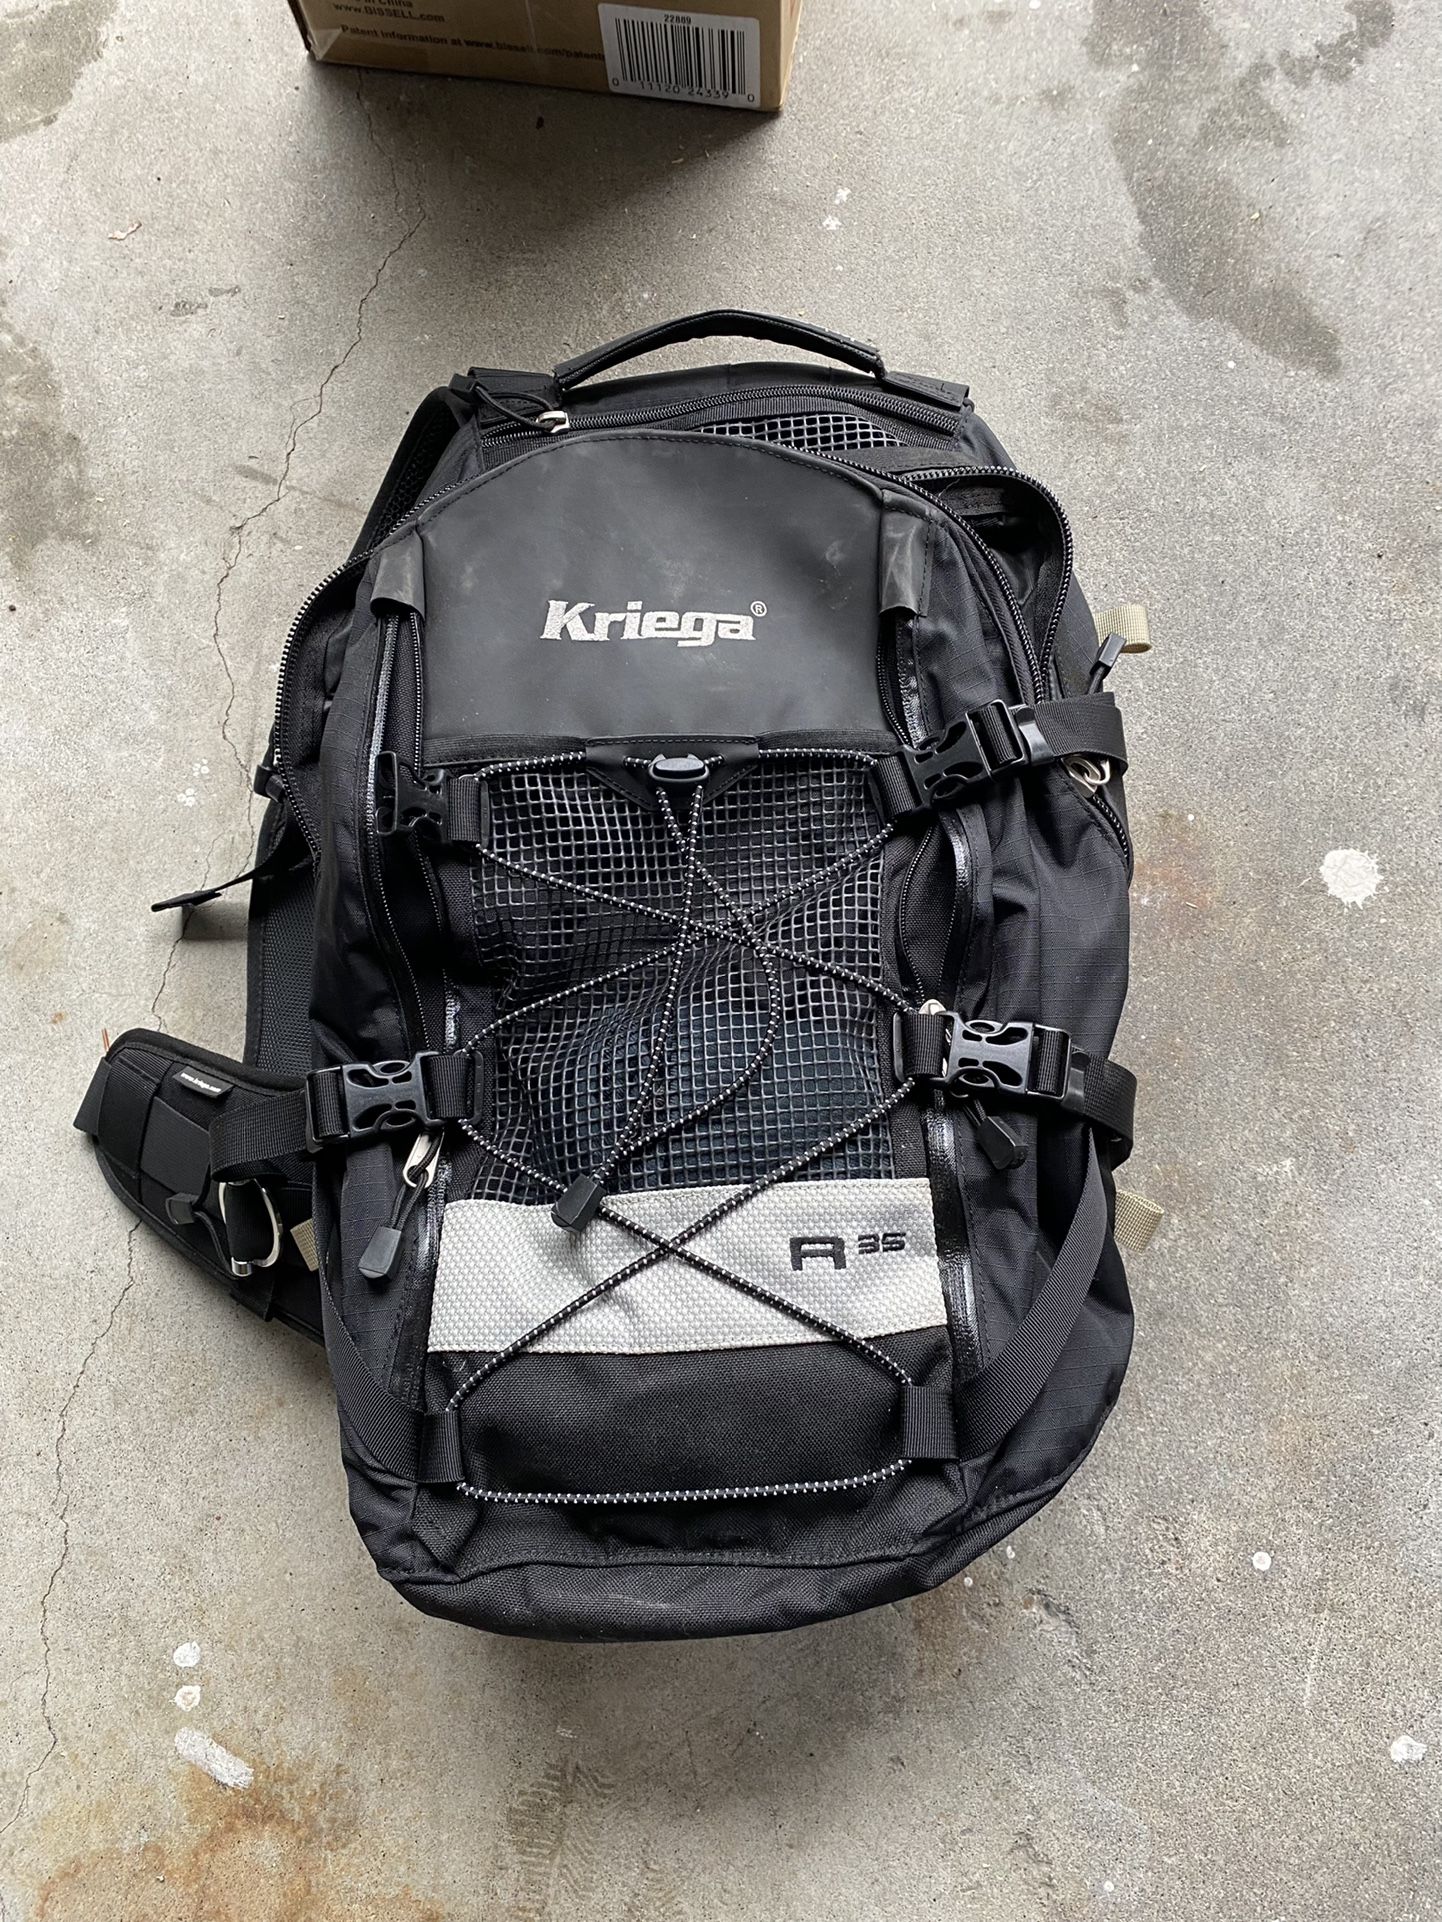 Kriega R35 Backpack 